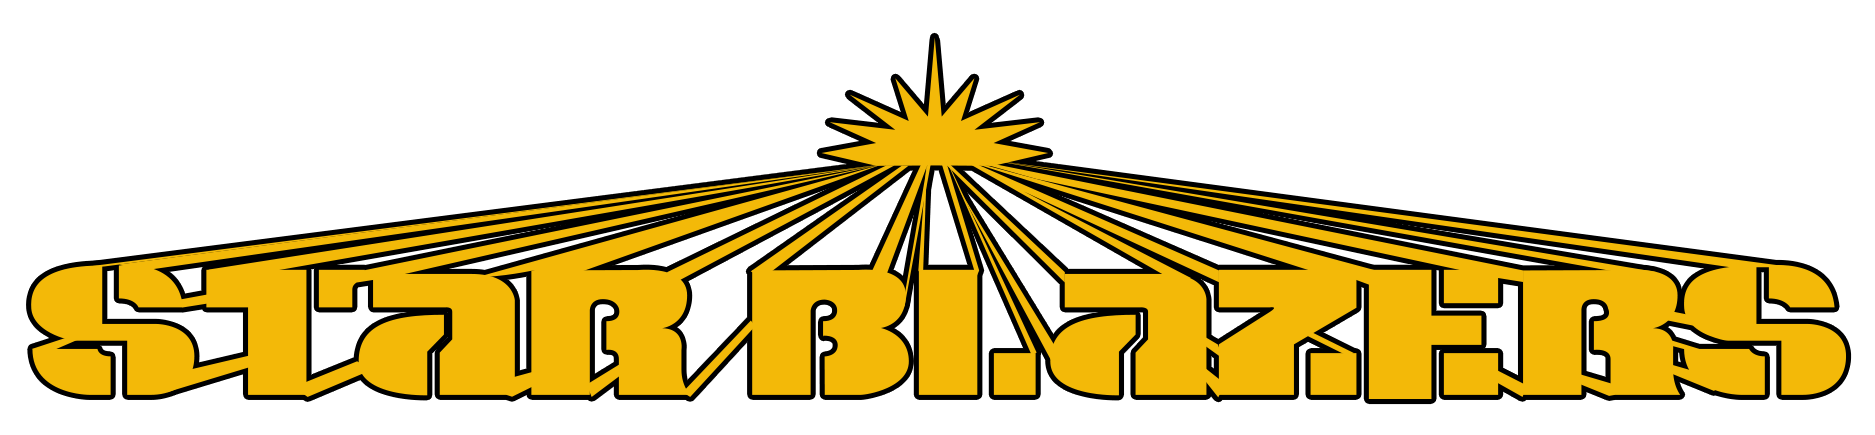 Star Blazers logo